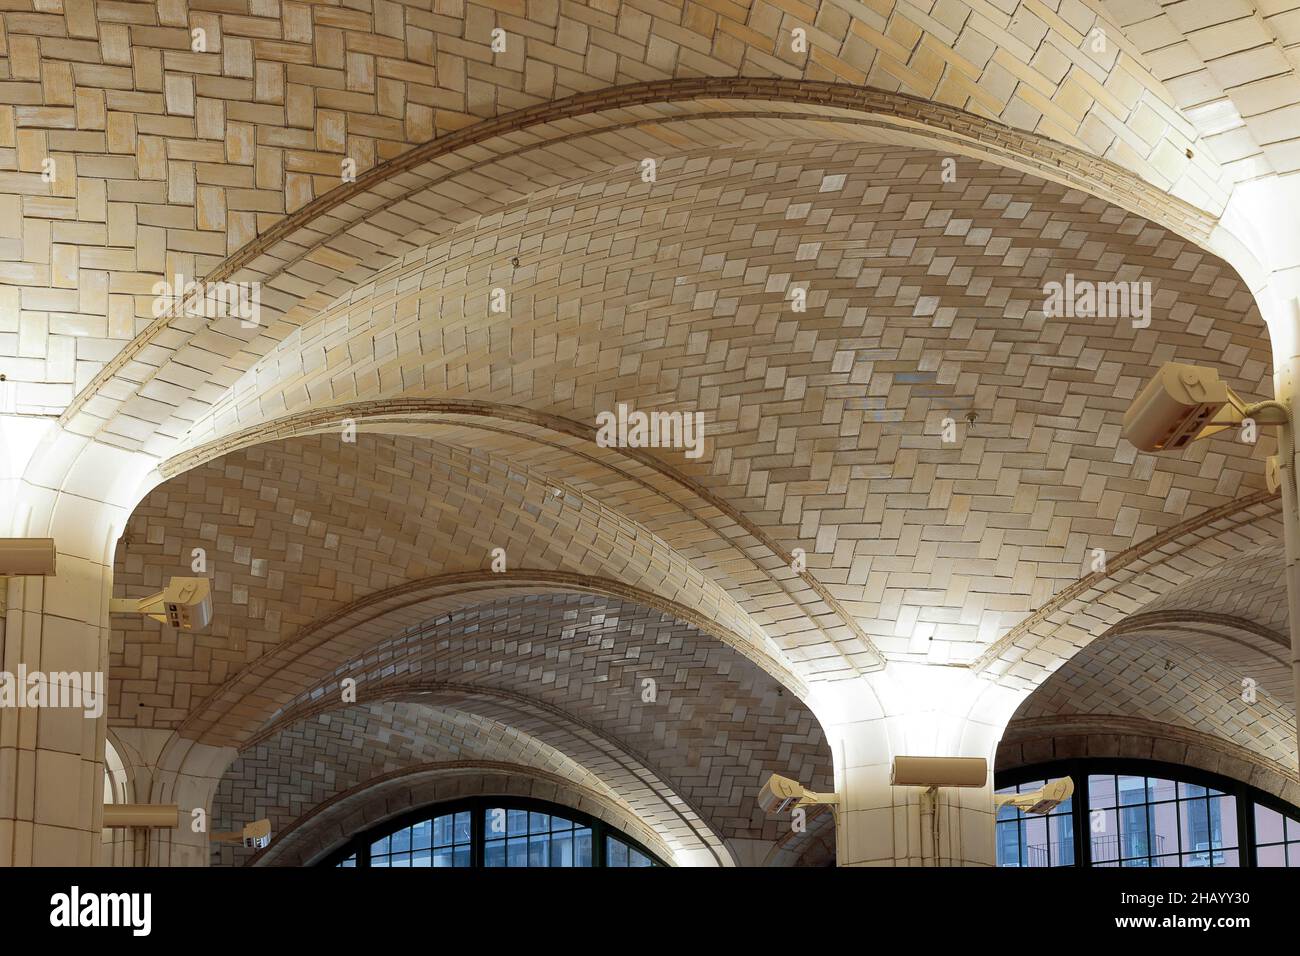 Un techo de bóveda de azulejos de terracota Guastavino dentro de un edificio en Nueva York, NY. Rafael Guastavino era famoso por su sistema de azulejos entrelazados y arcos Foto de stock